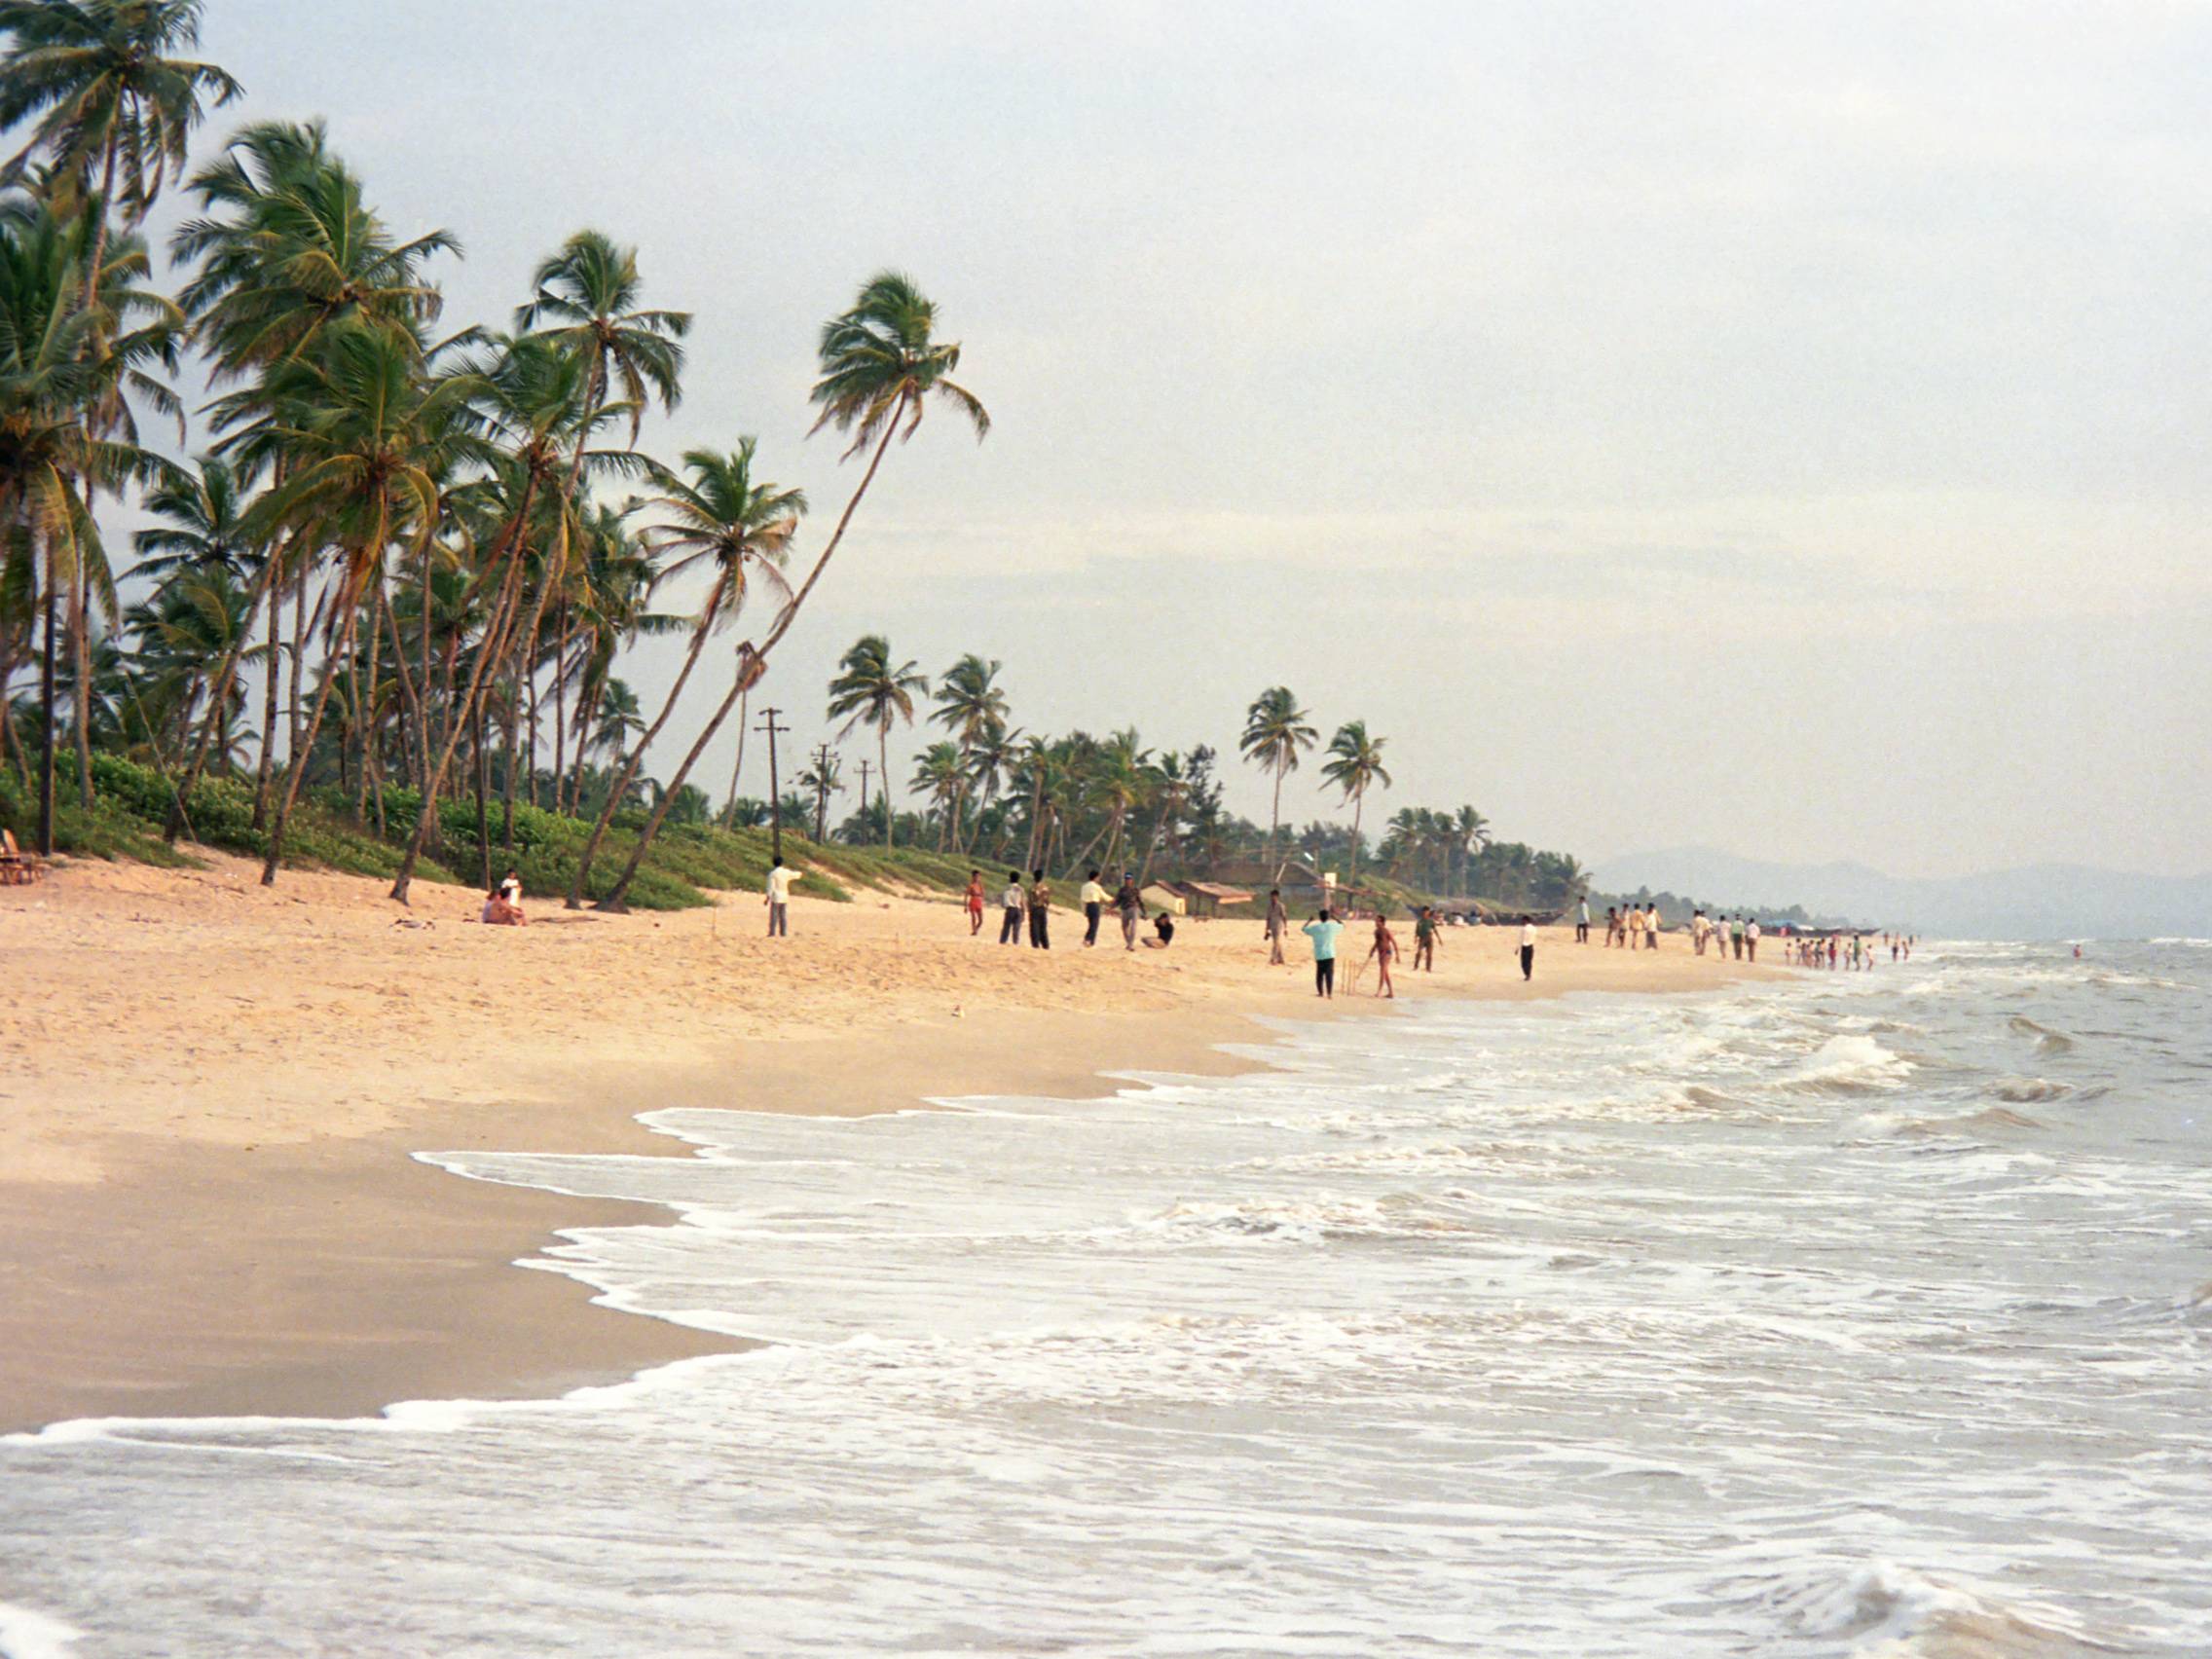 Пляж колва на гоа - фото, описание, жилье, где поесть, что посмотреть - блог о путешествиях